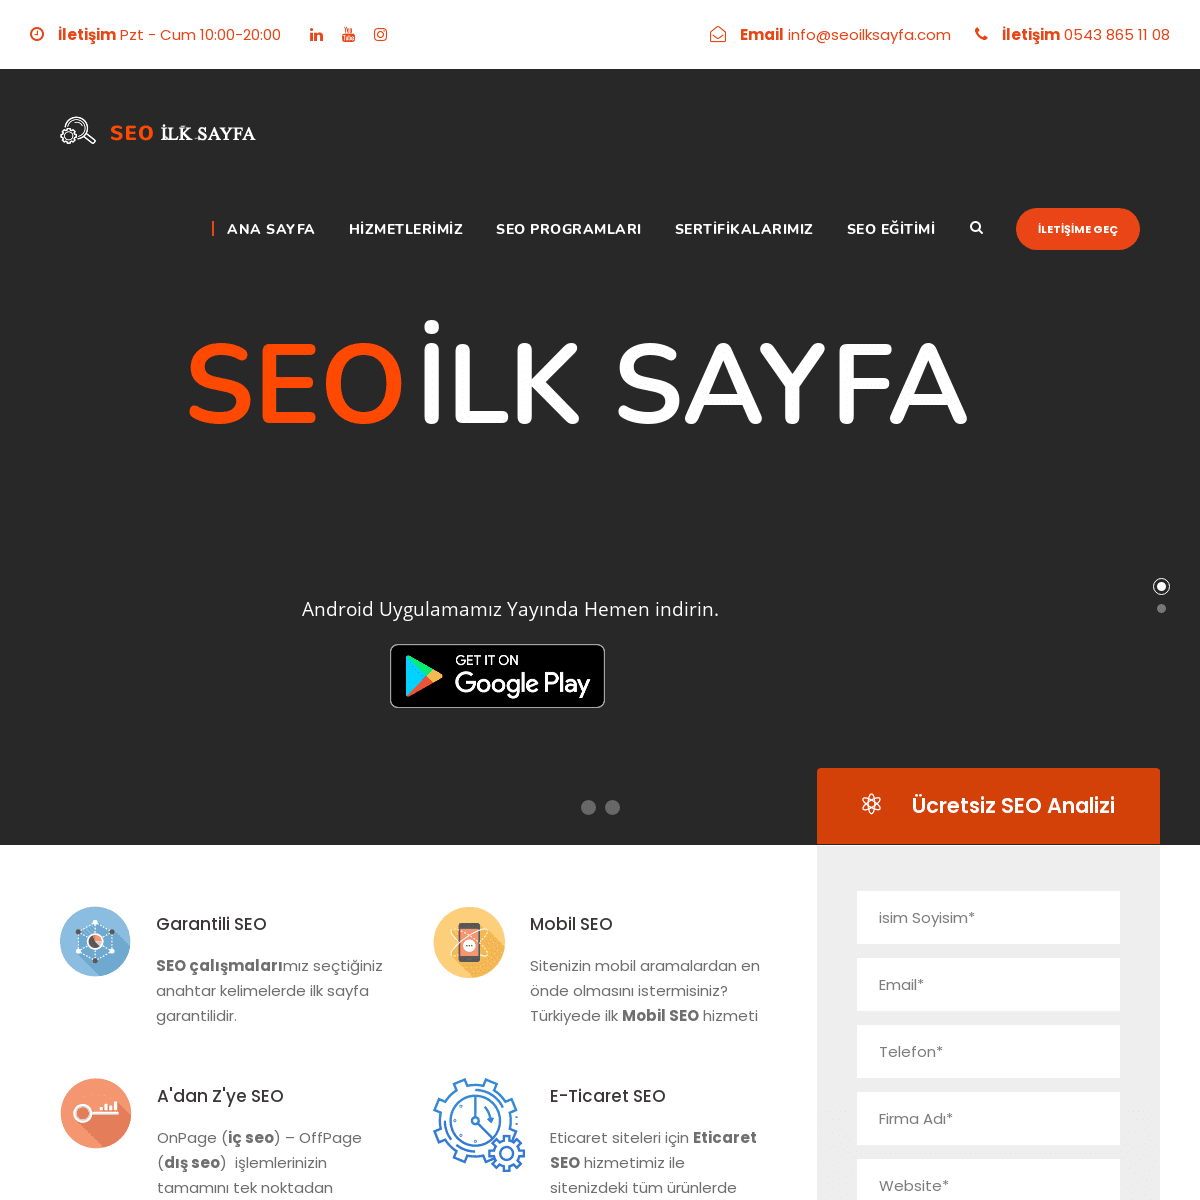 A complete backup of https://seoilksayfa.com